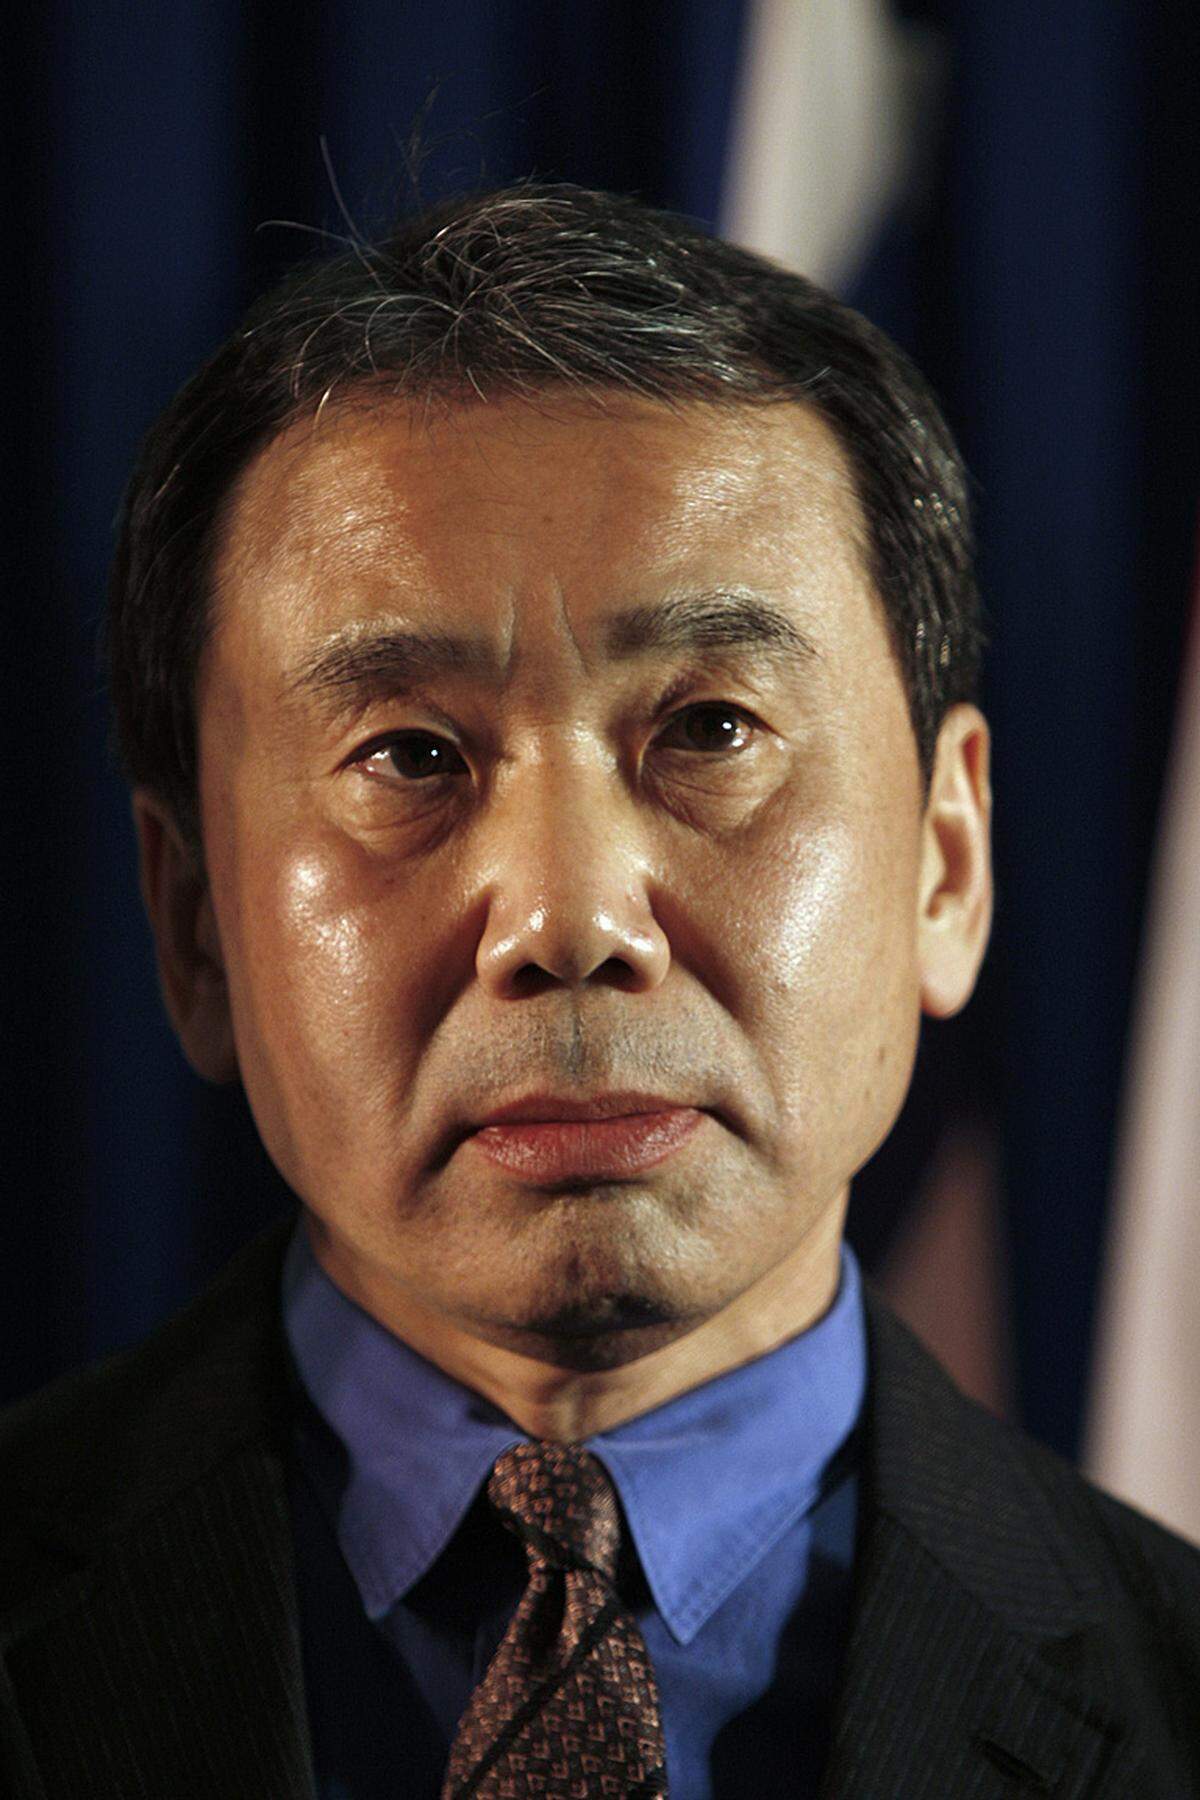 Ginge es nach der Leserschaft, hätte der Japaner Haruki Murakami längst einen Nobelpreis. Seit vielen Jahren liegt er auf den Spitzenplätzen bei den Nobelpreis-Wetten. Bei Kritikern sind seine Werke wie "1Q84" hingegen umstritten. Der Autor läuft auf Marathons - vielleicht braucht er diese Ausdauer auch beim Nobelpreis.